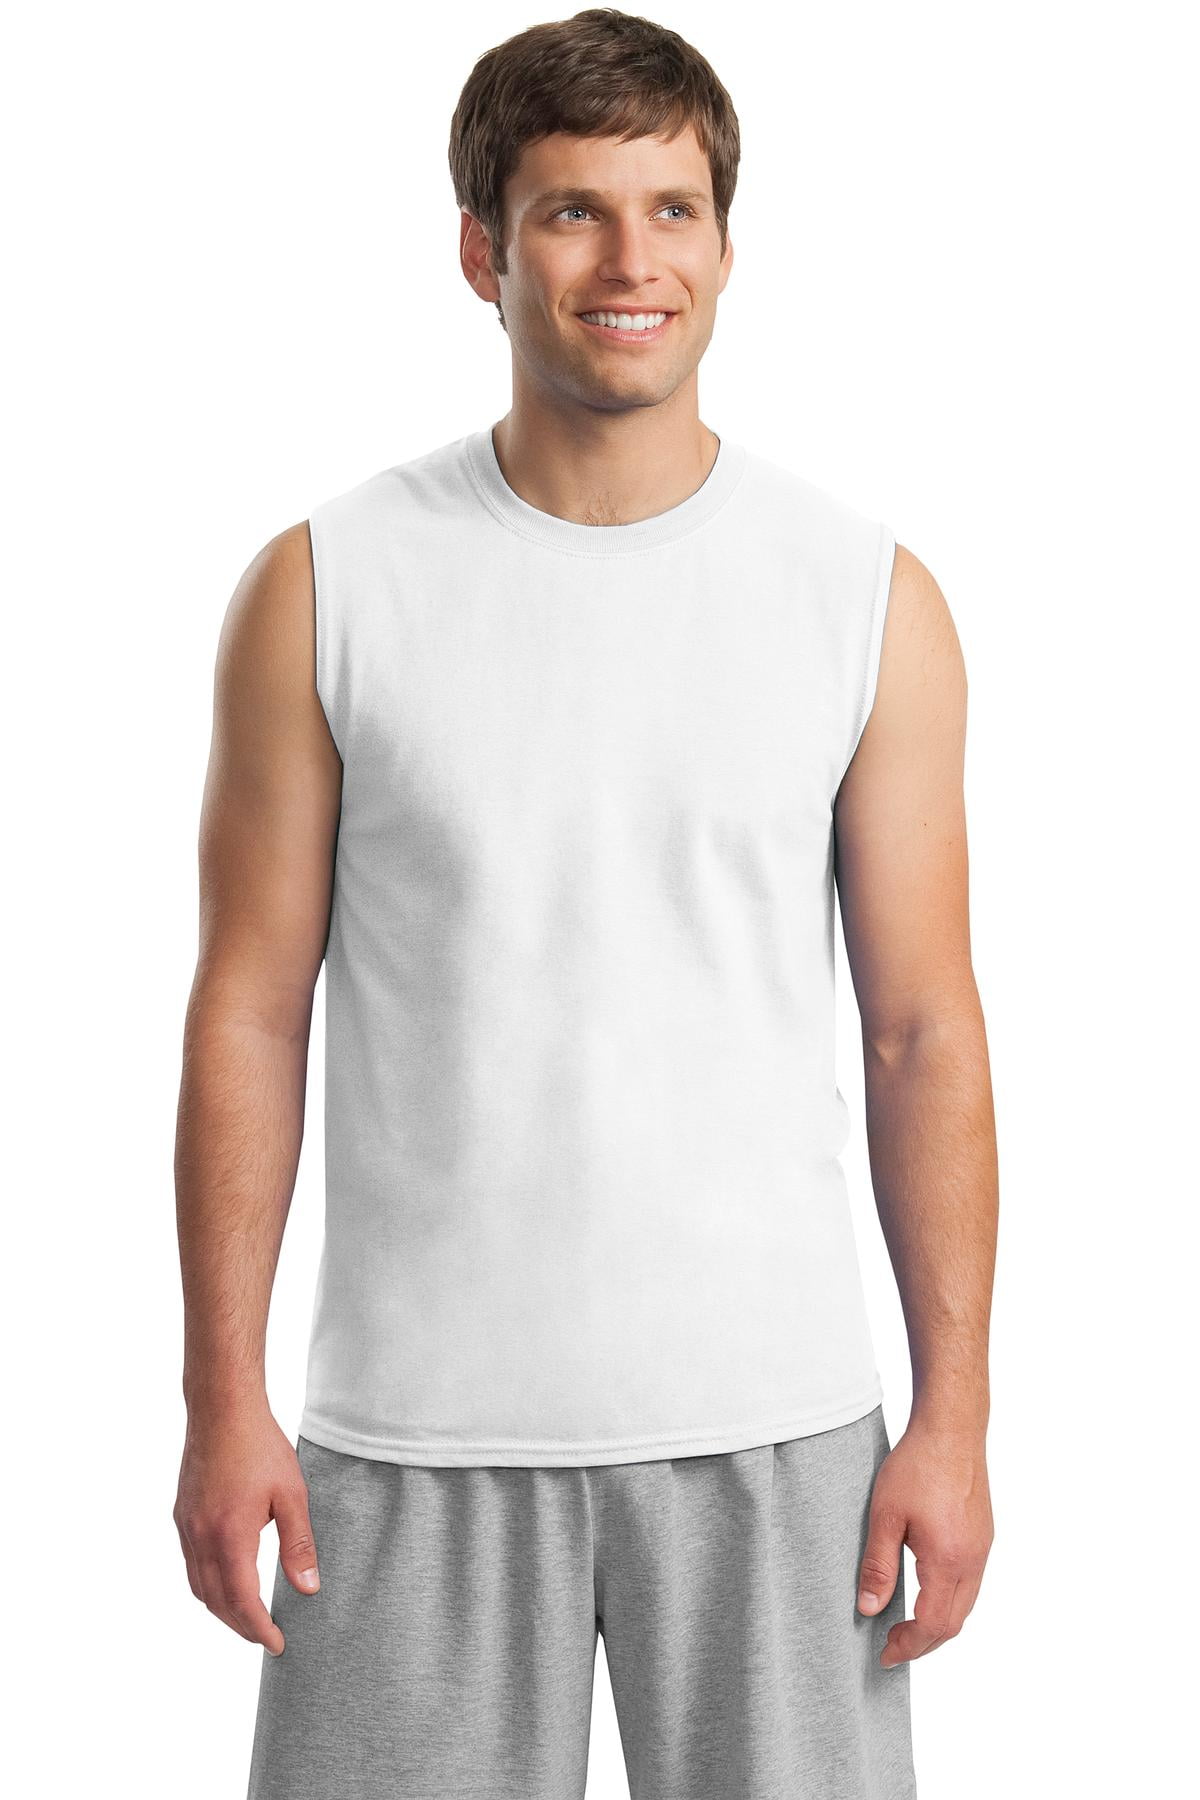 Gildan - Gildan Men's Ultra Cotton Sleeveless T-Shirt - 2700 - Walmart ...